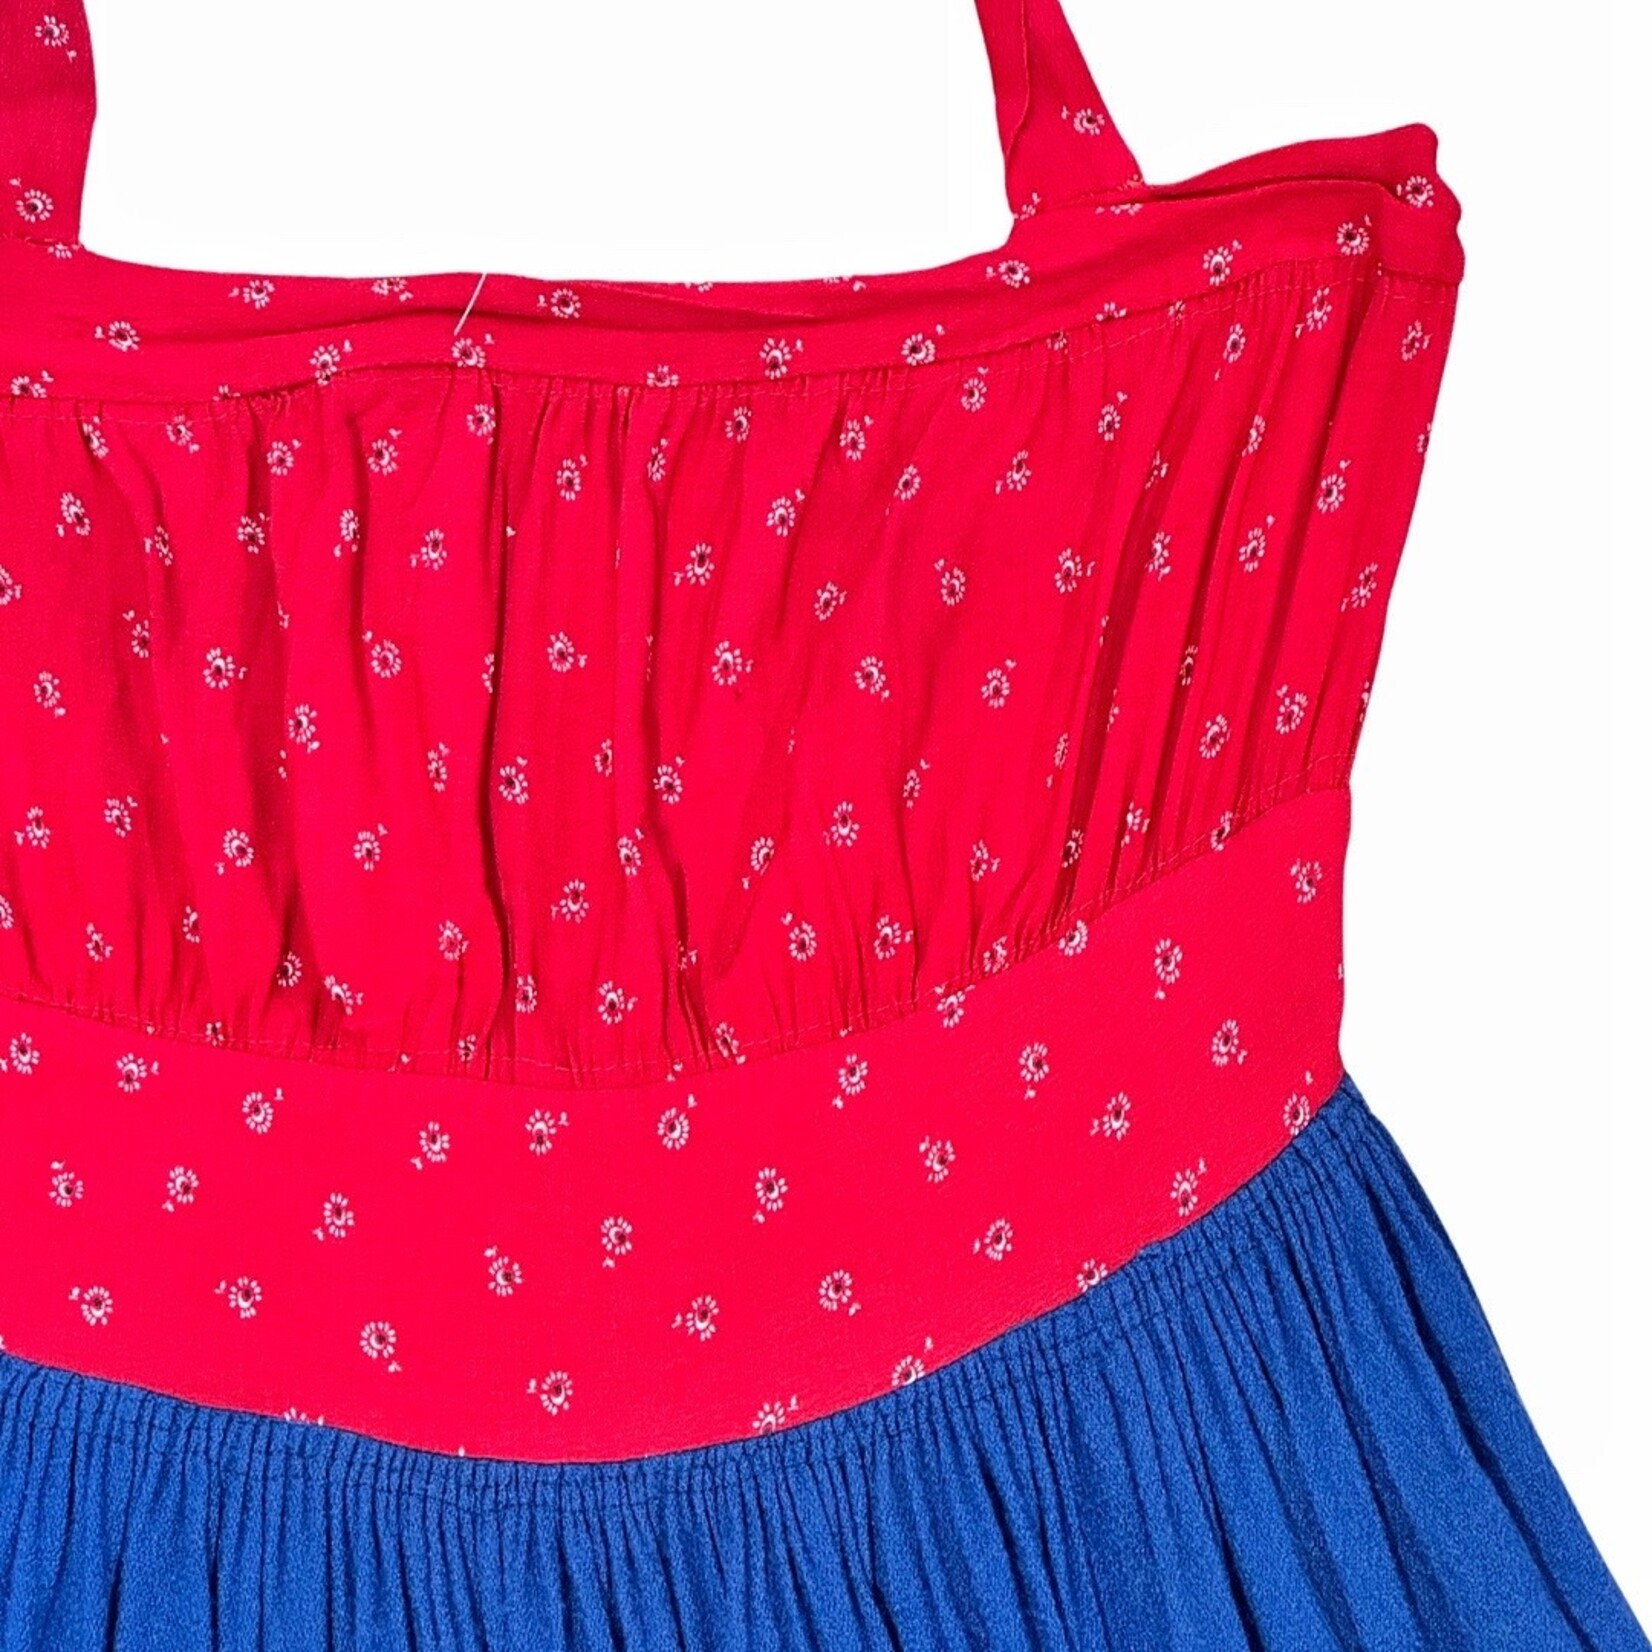 Vintage Vintage halter dress red and blue size M/L